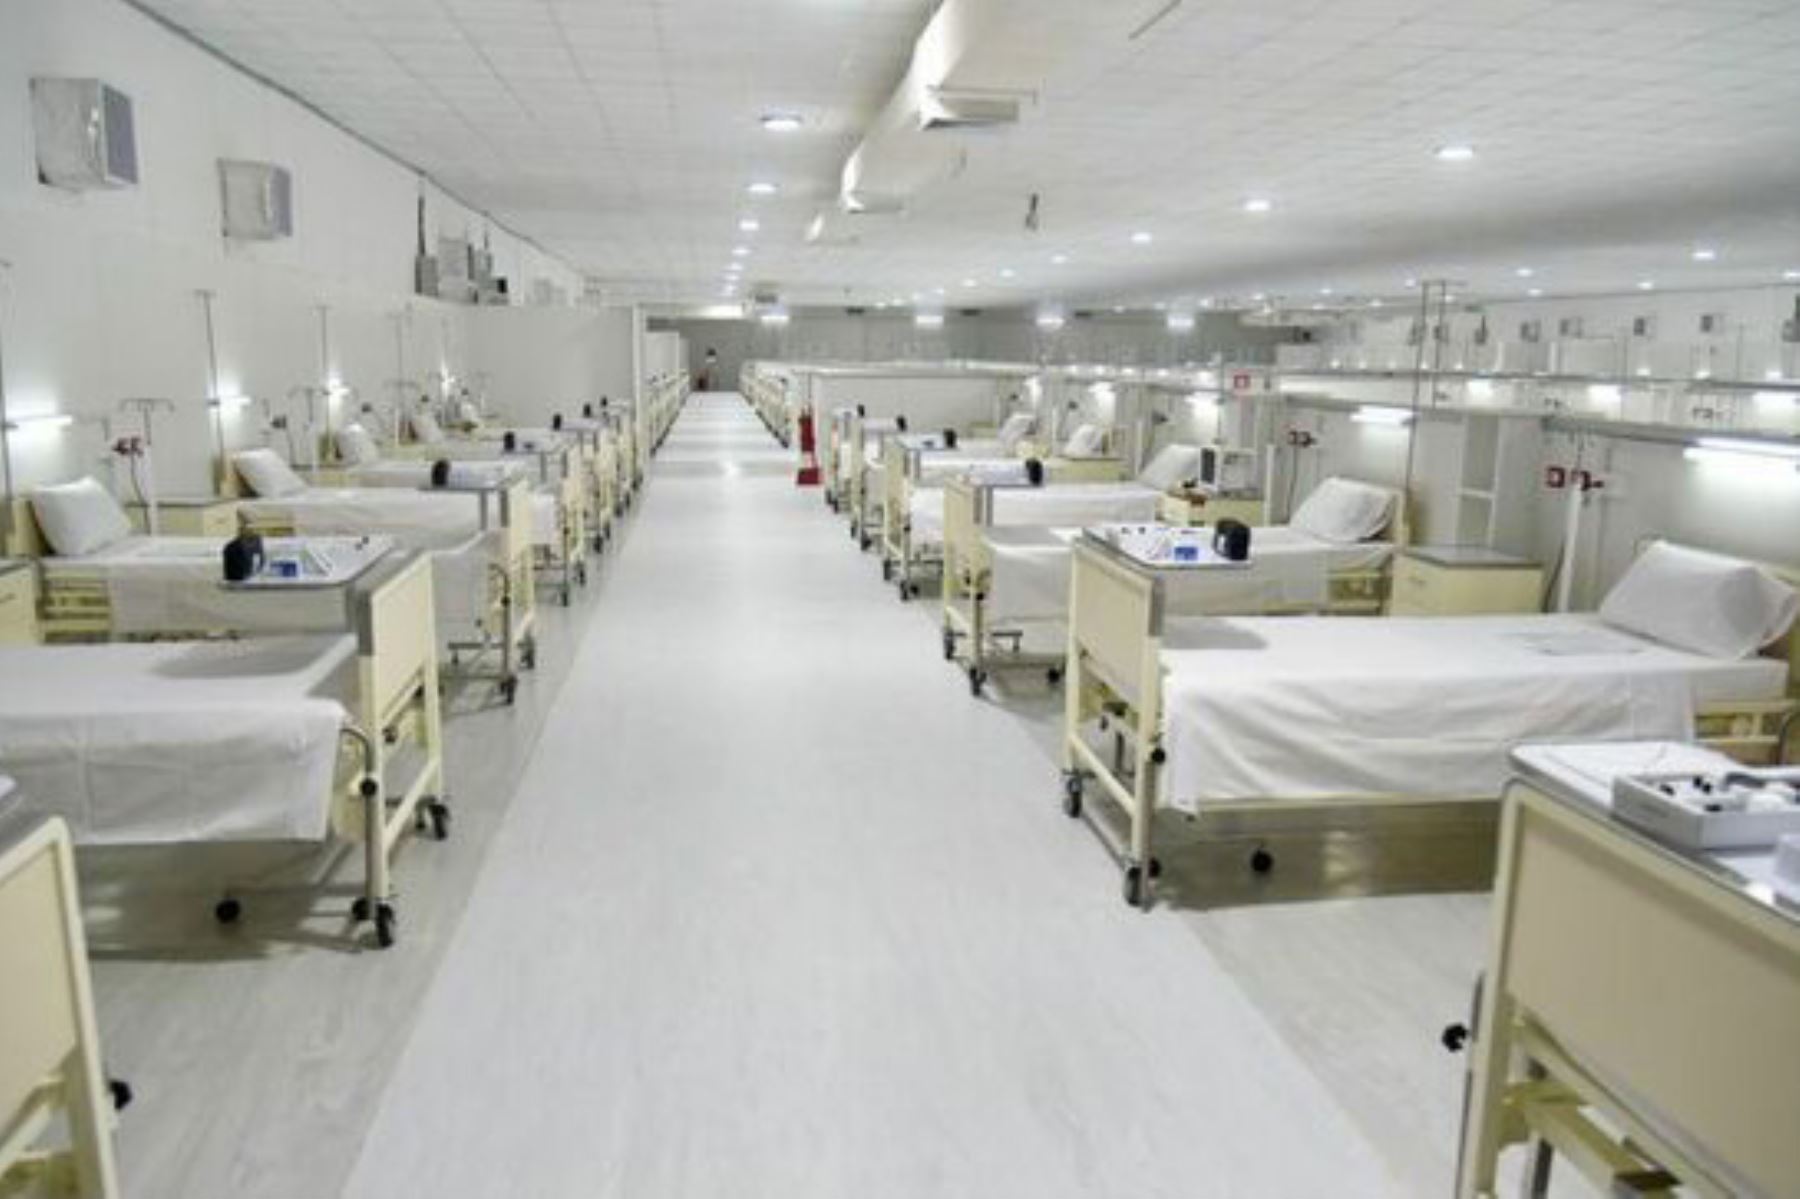 El Hospital Modular Temporal está ubicado en los interiores del Hospital Regional de Loreto, y reforzará la respuesta sanitaria, aportando 150 camas hospitalarias equipadas con un concentrador de oxígeno de 10 litros, para 24 horas de abastecimiento permanente, y 25 camas UCI. ANDINA/Minsa